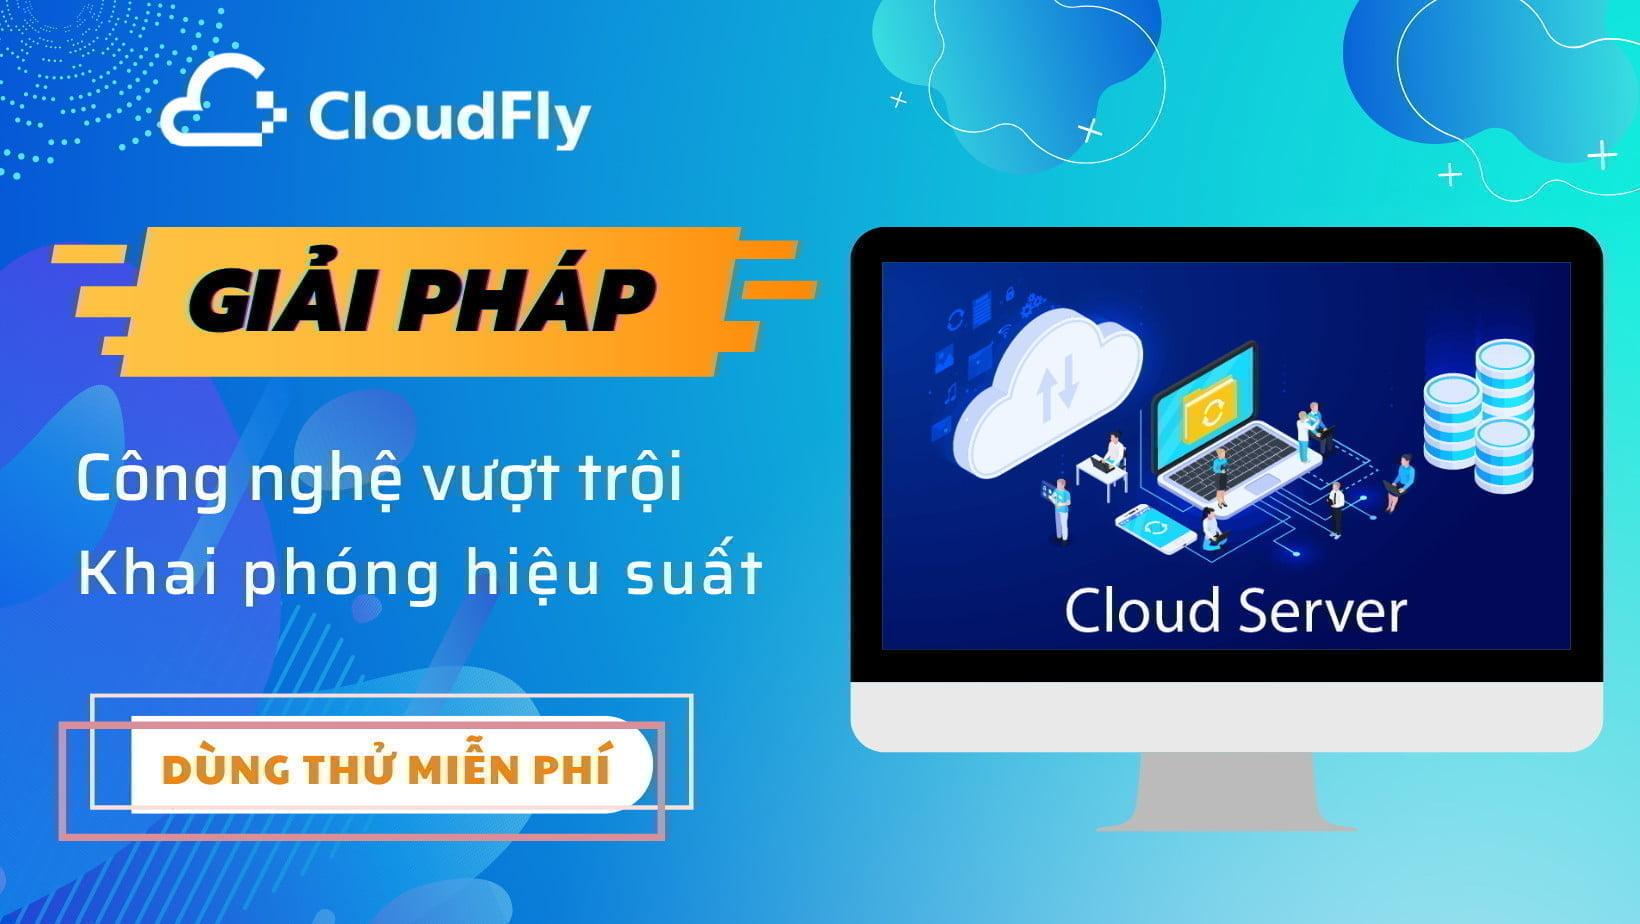 đăng ký cloud server chất lượng giá rẻ tại cloudfly